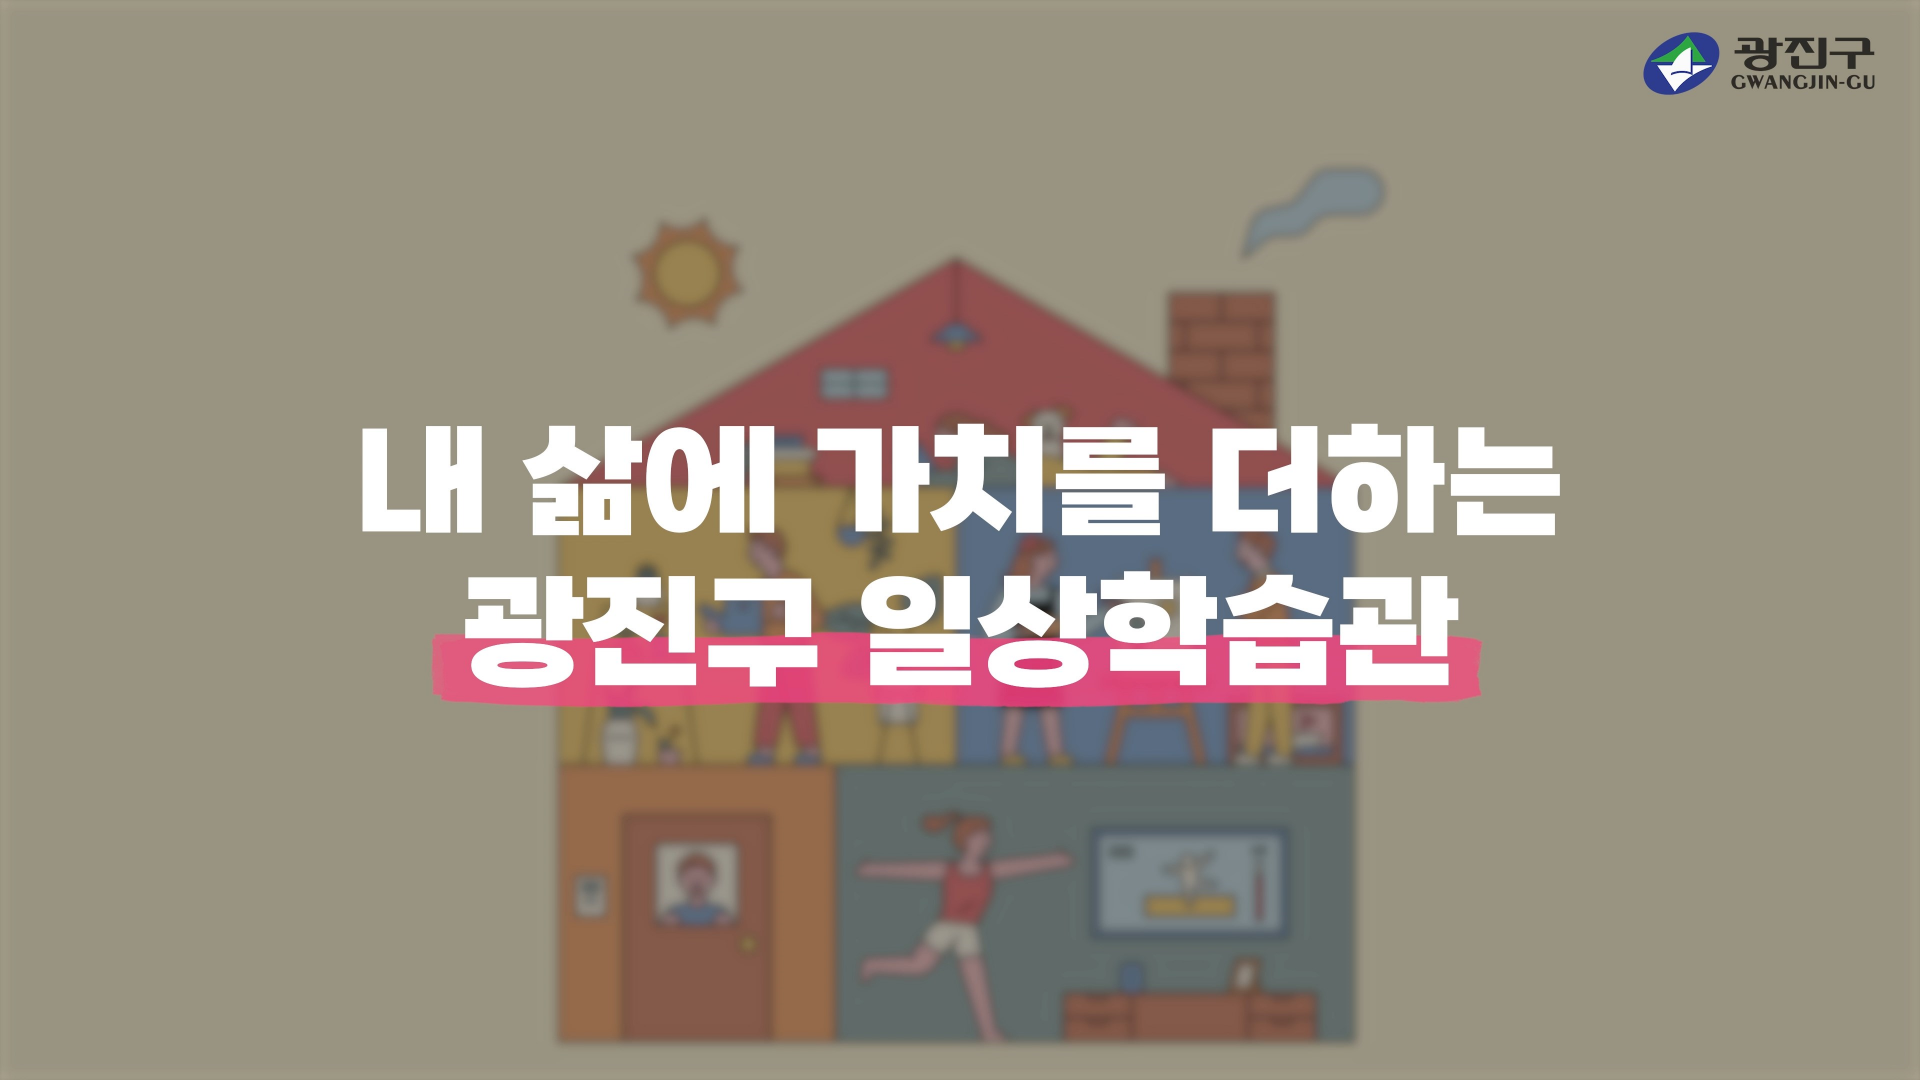 2022. 광진구 일상학습관 홍보영상